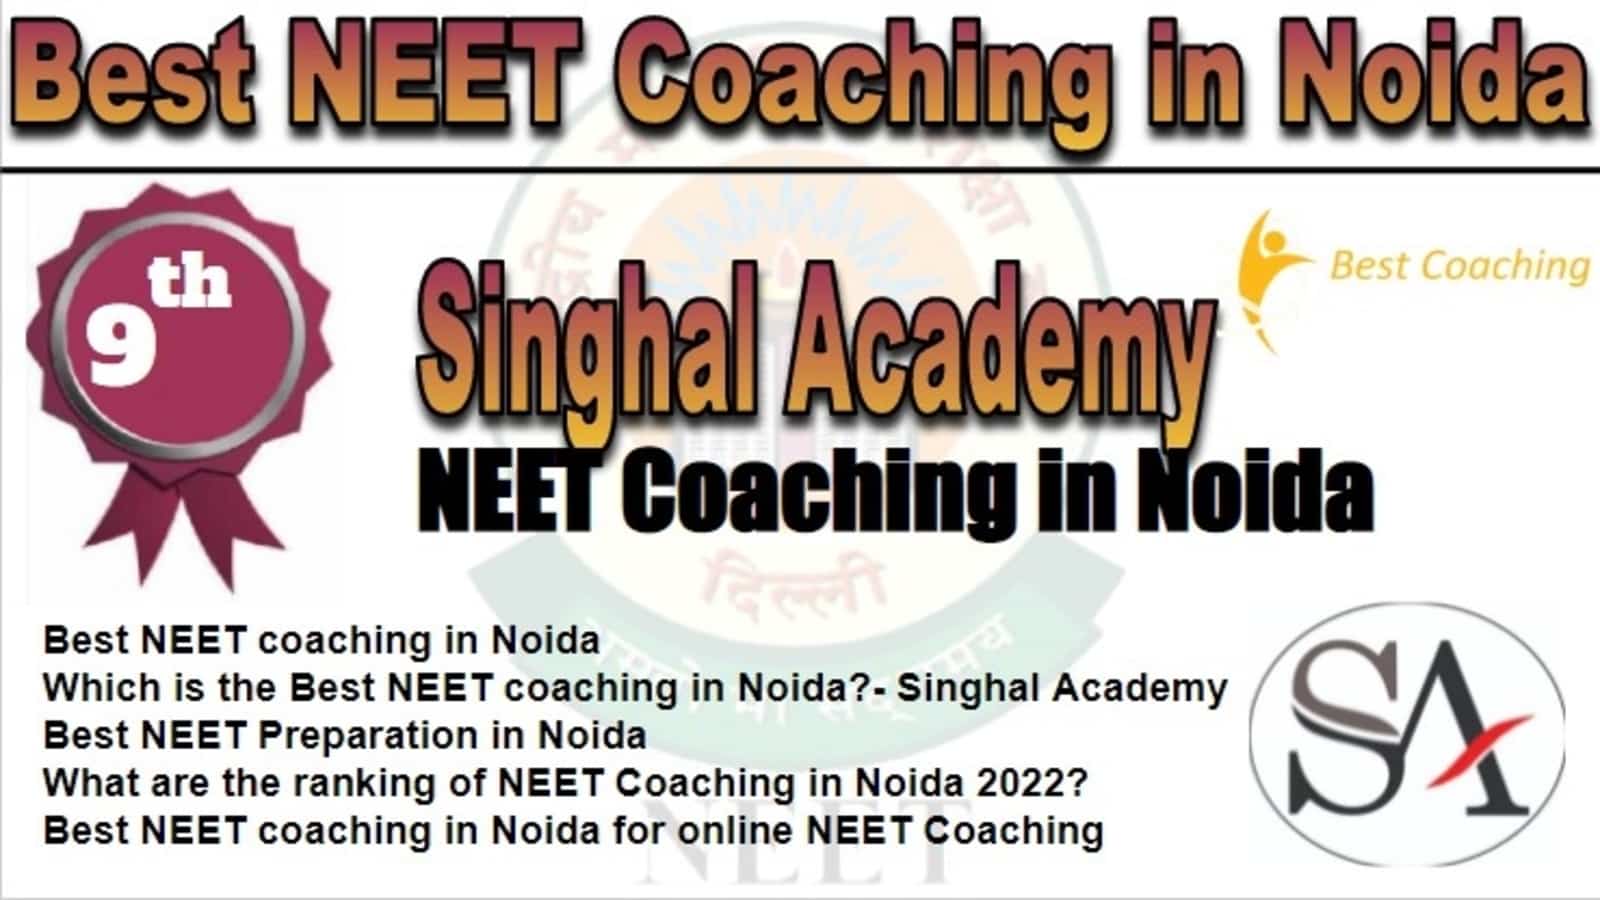 Rank 9 Best NEET Coaching in Noida